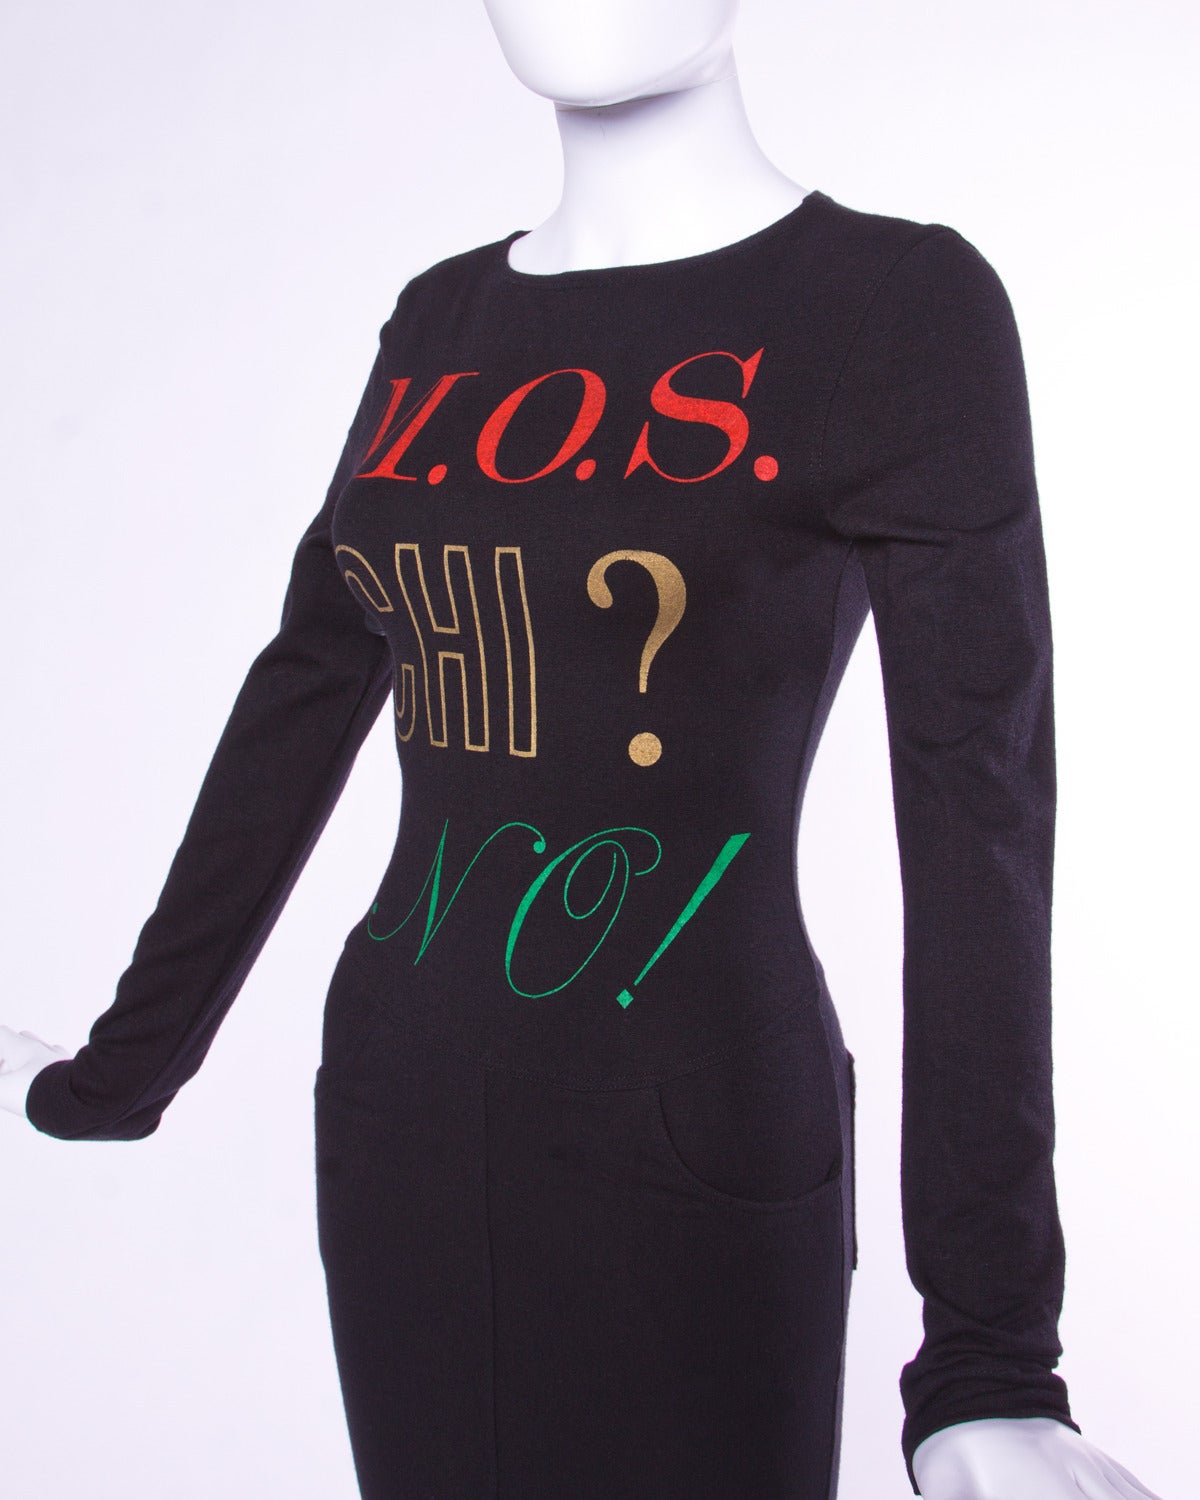 Moschino Jeans - Robe à manches longues vintage avec imprimé graphique « M.O.S. CHI? NO! » NO! » Robe à manches longues Pour femmes en vente